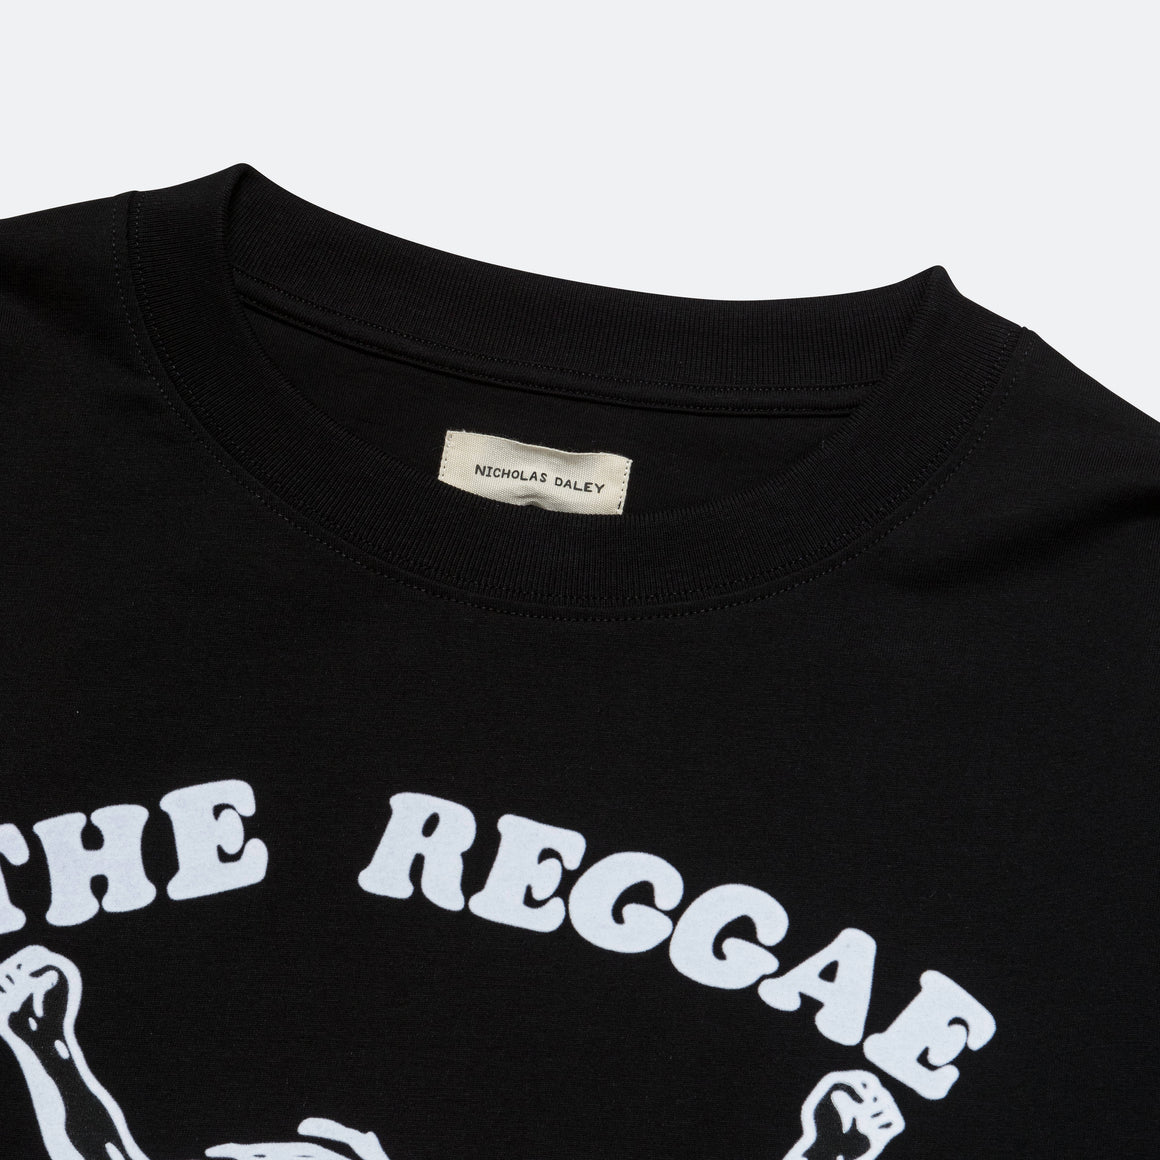 Nicholas Daley - LS Reggae Klub T-Shirt - Black - UP THERE